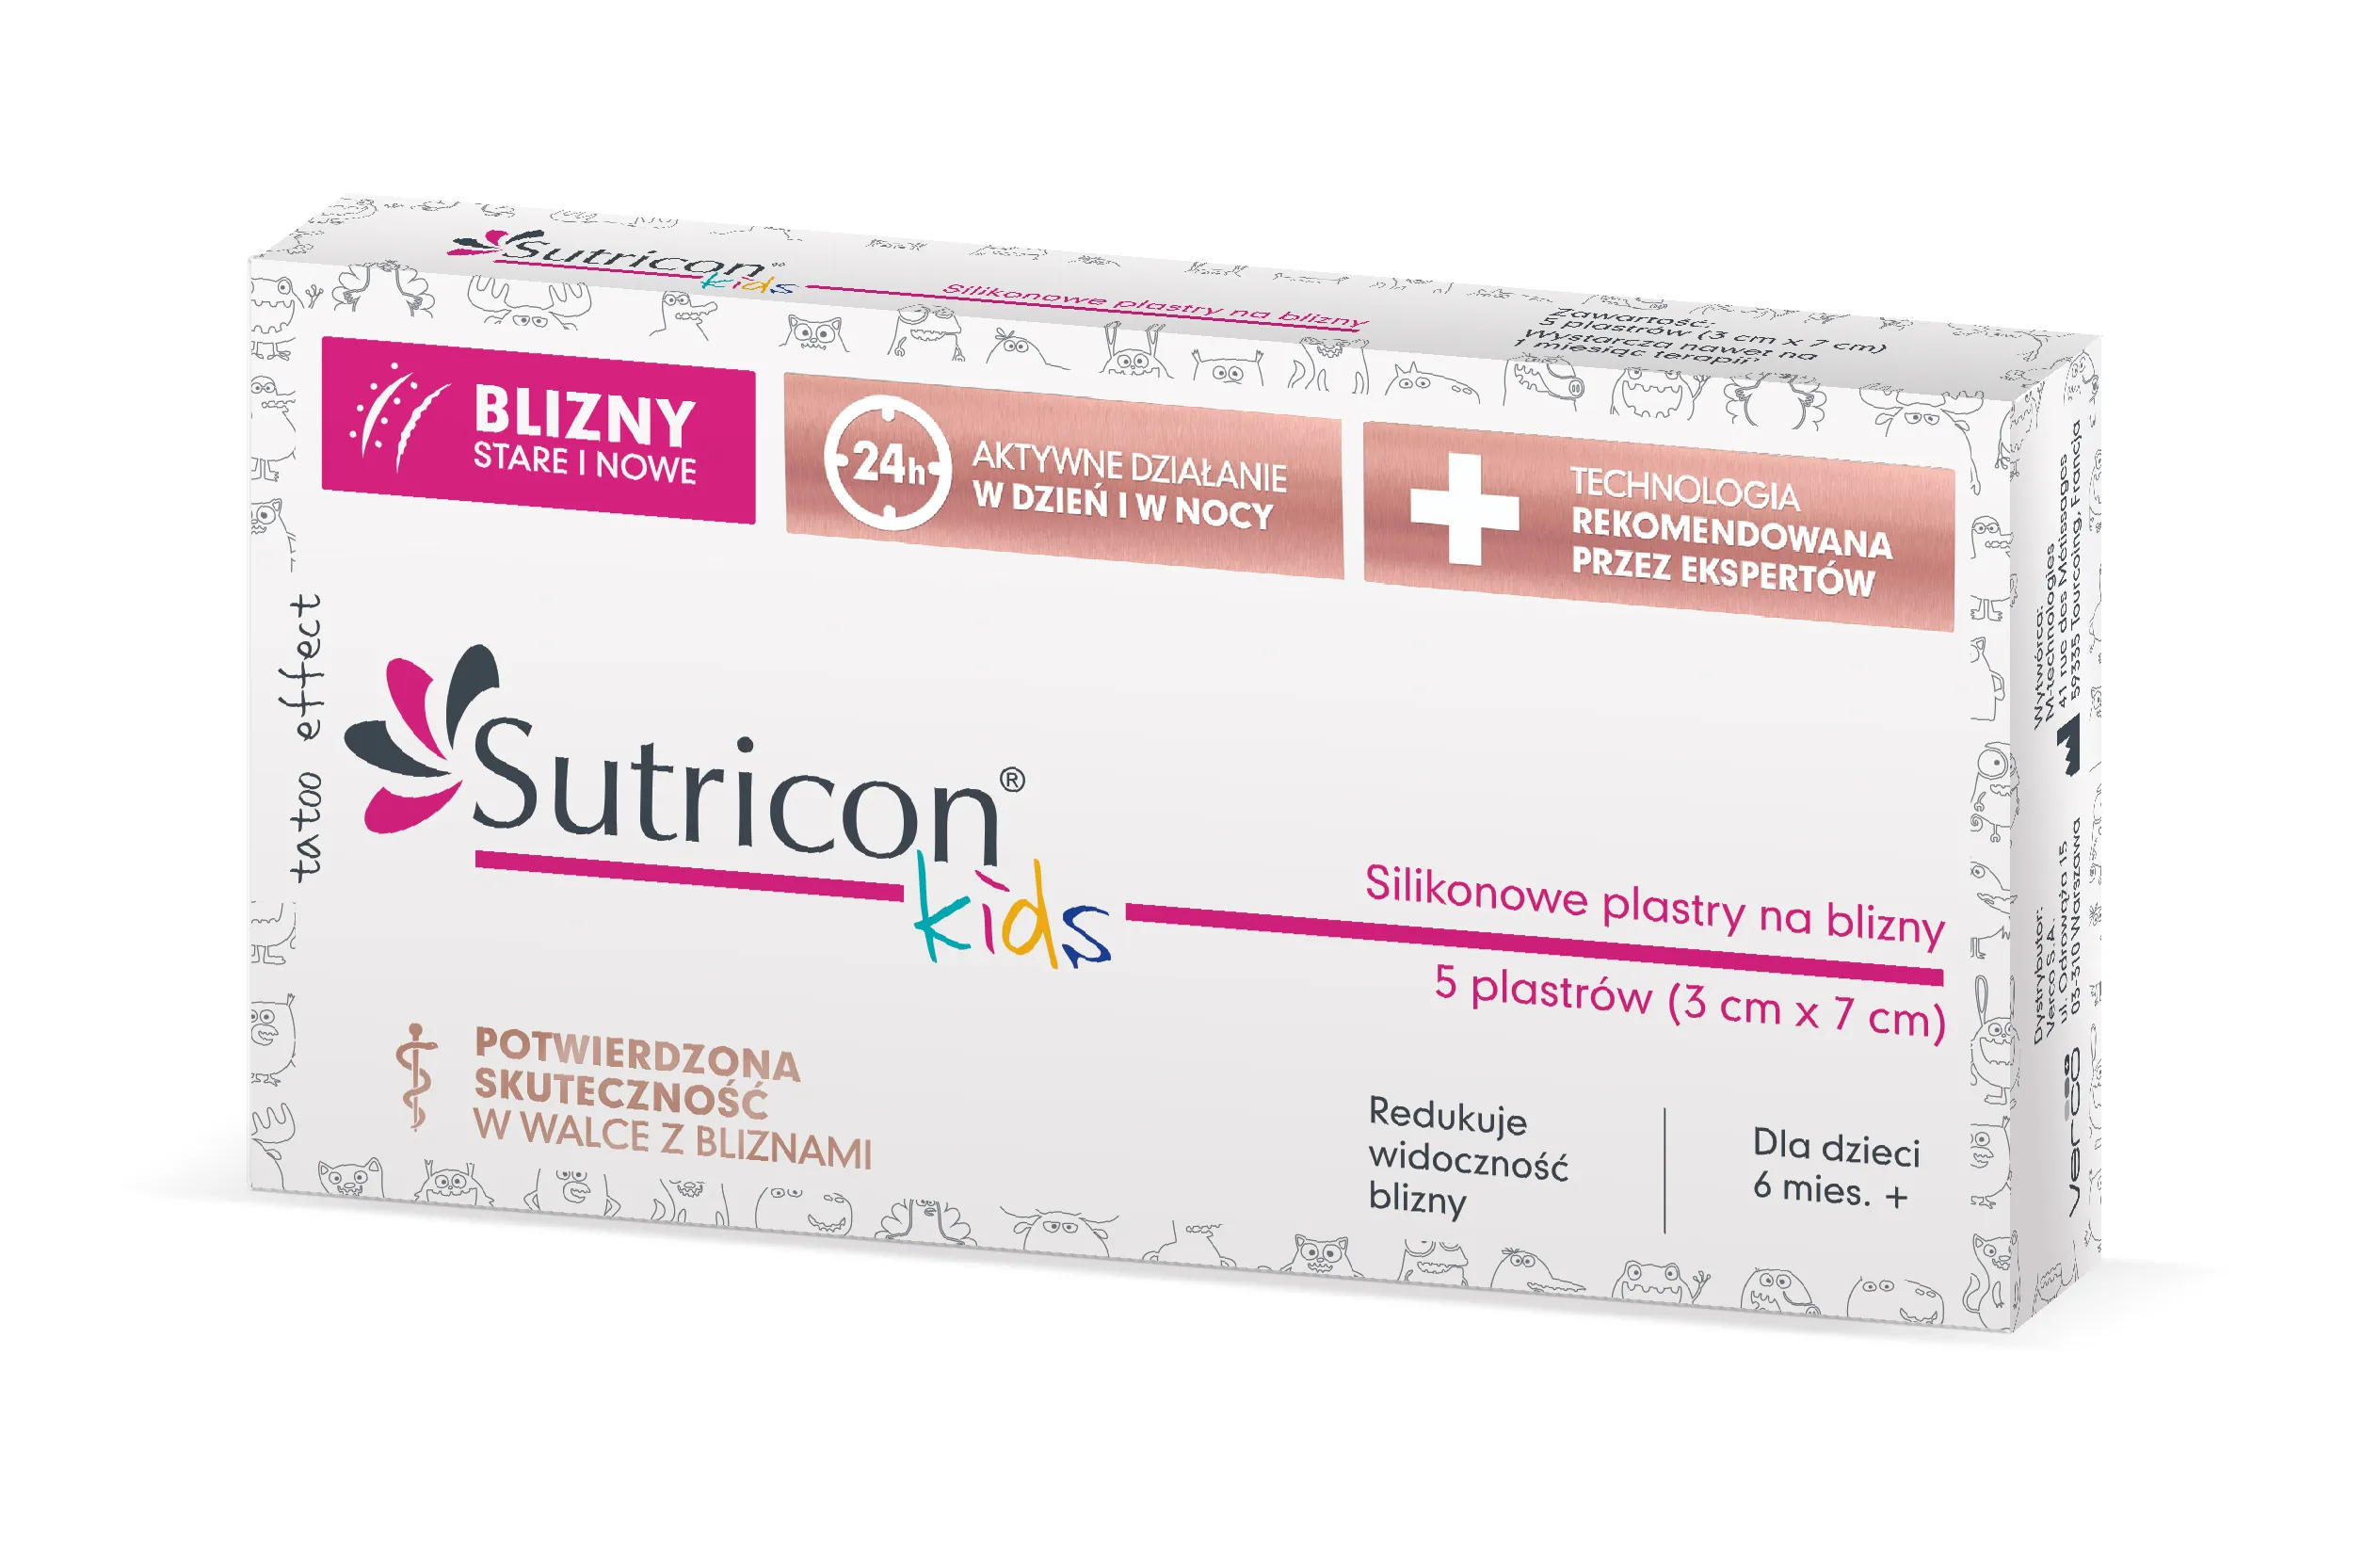 Sutricon Kids, silikonowe plastry na blizny dla dzieci, 3 x 7 cm, 5 sztuk